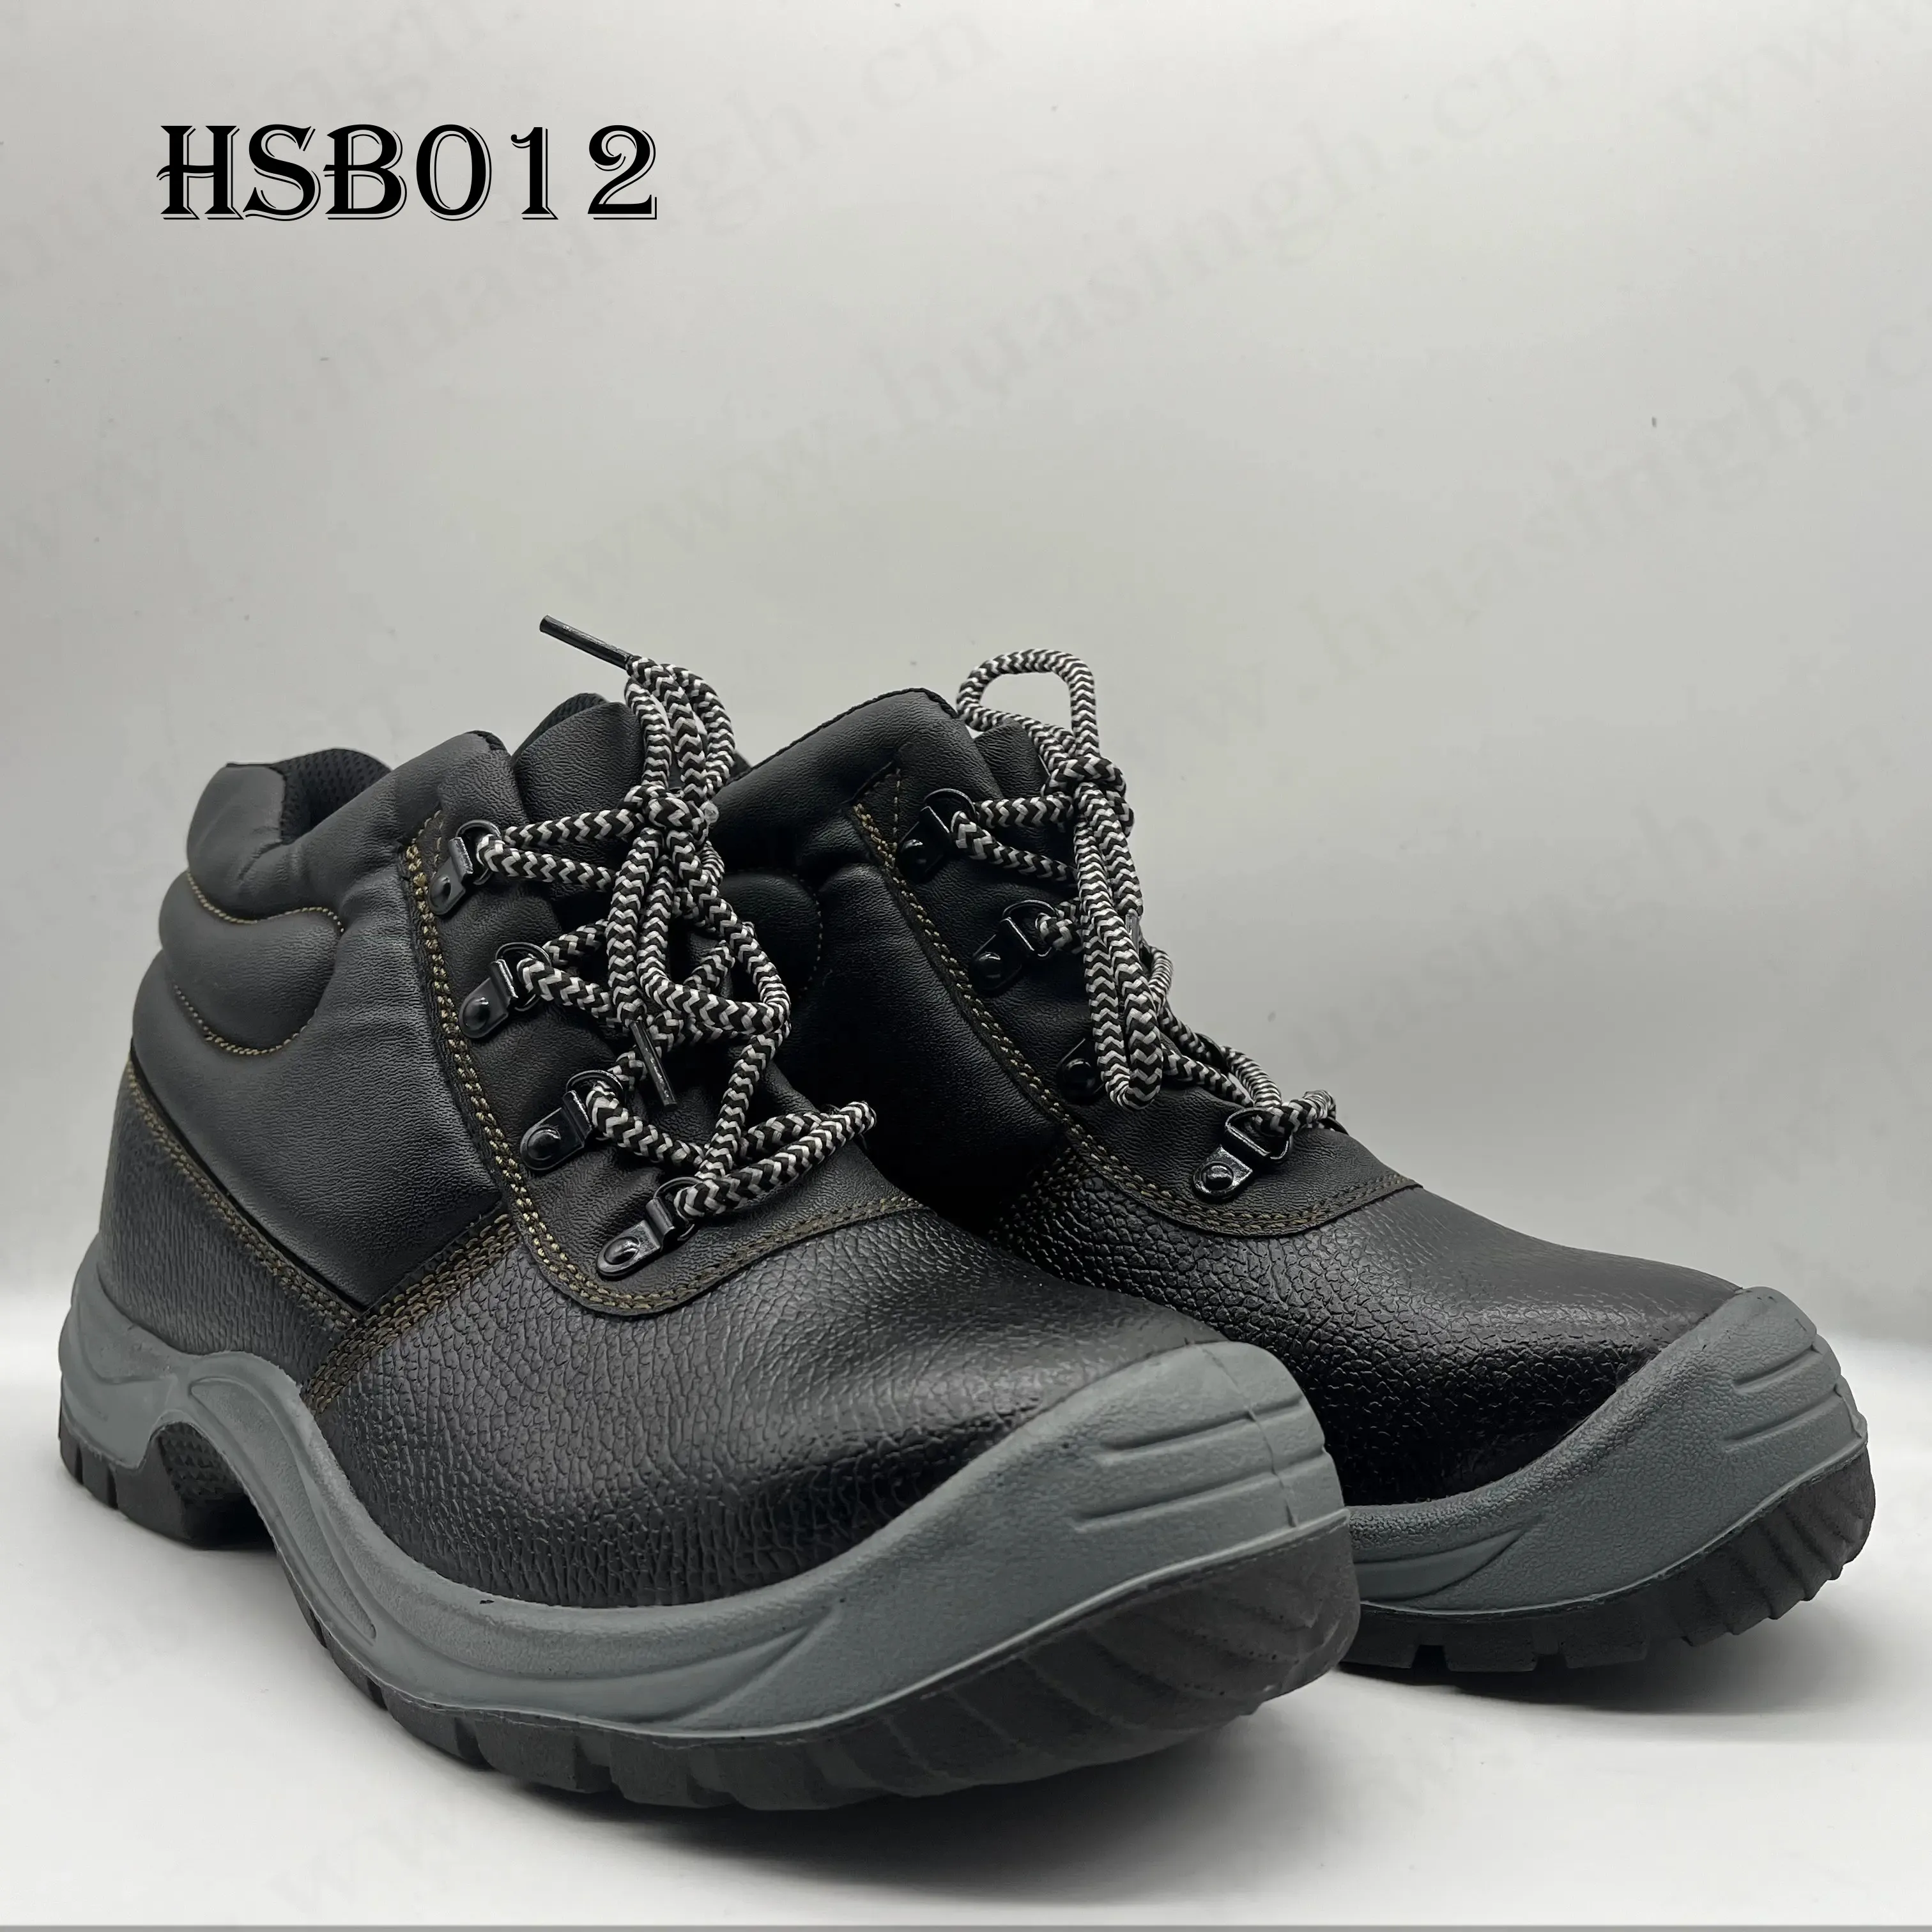 YWQ, 카타르 시장 인기 미드 컷 강한 그립 PU/PU 사출 안전 신발 CE 승인 튼튼한 노동 보험 신발 HSB012